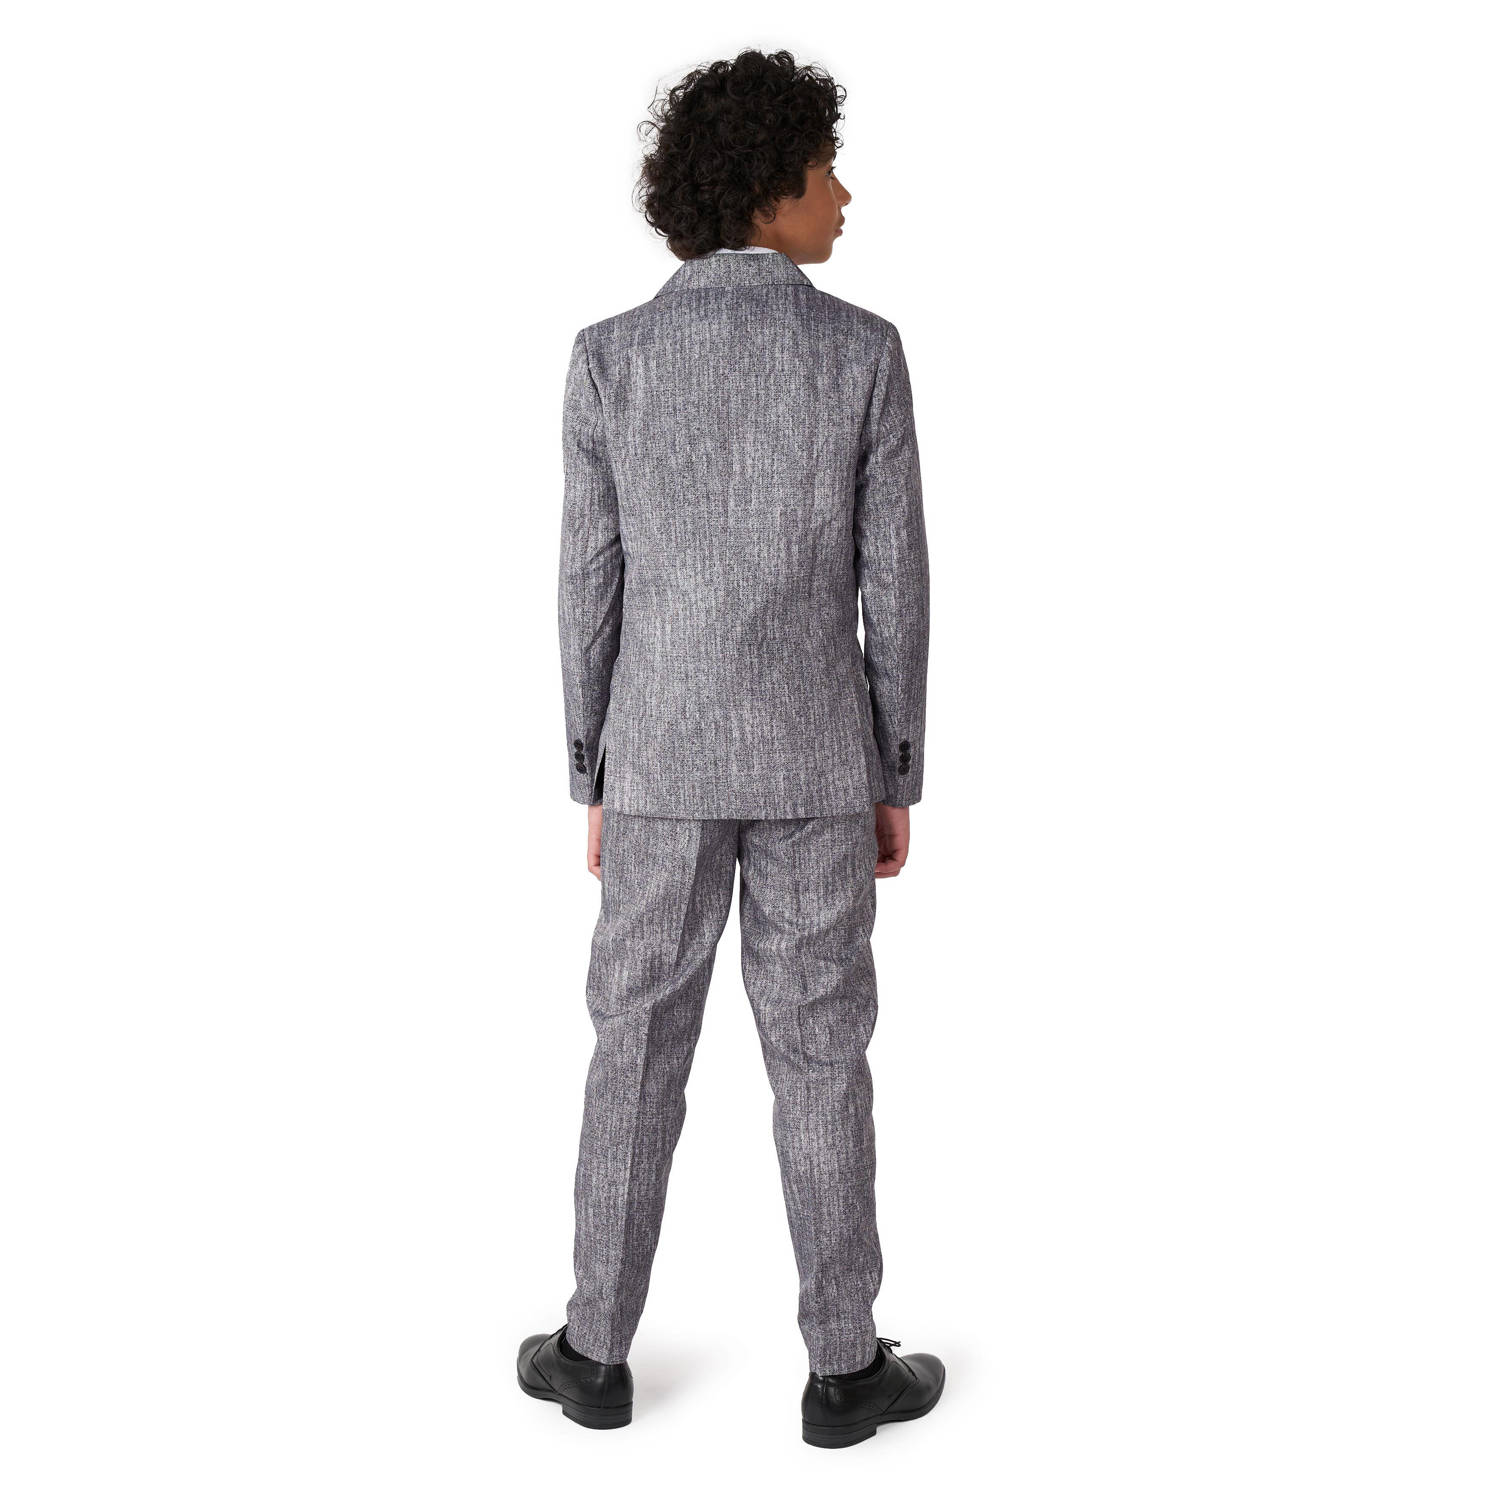 Suitmeister gemêleerde kostuum grijs